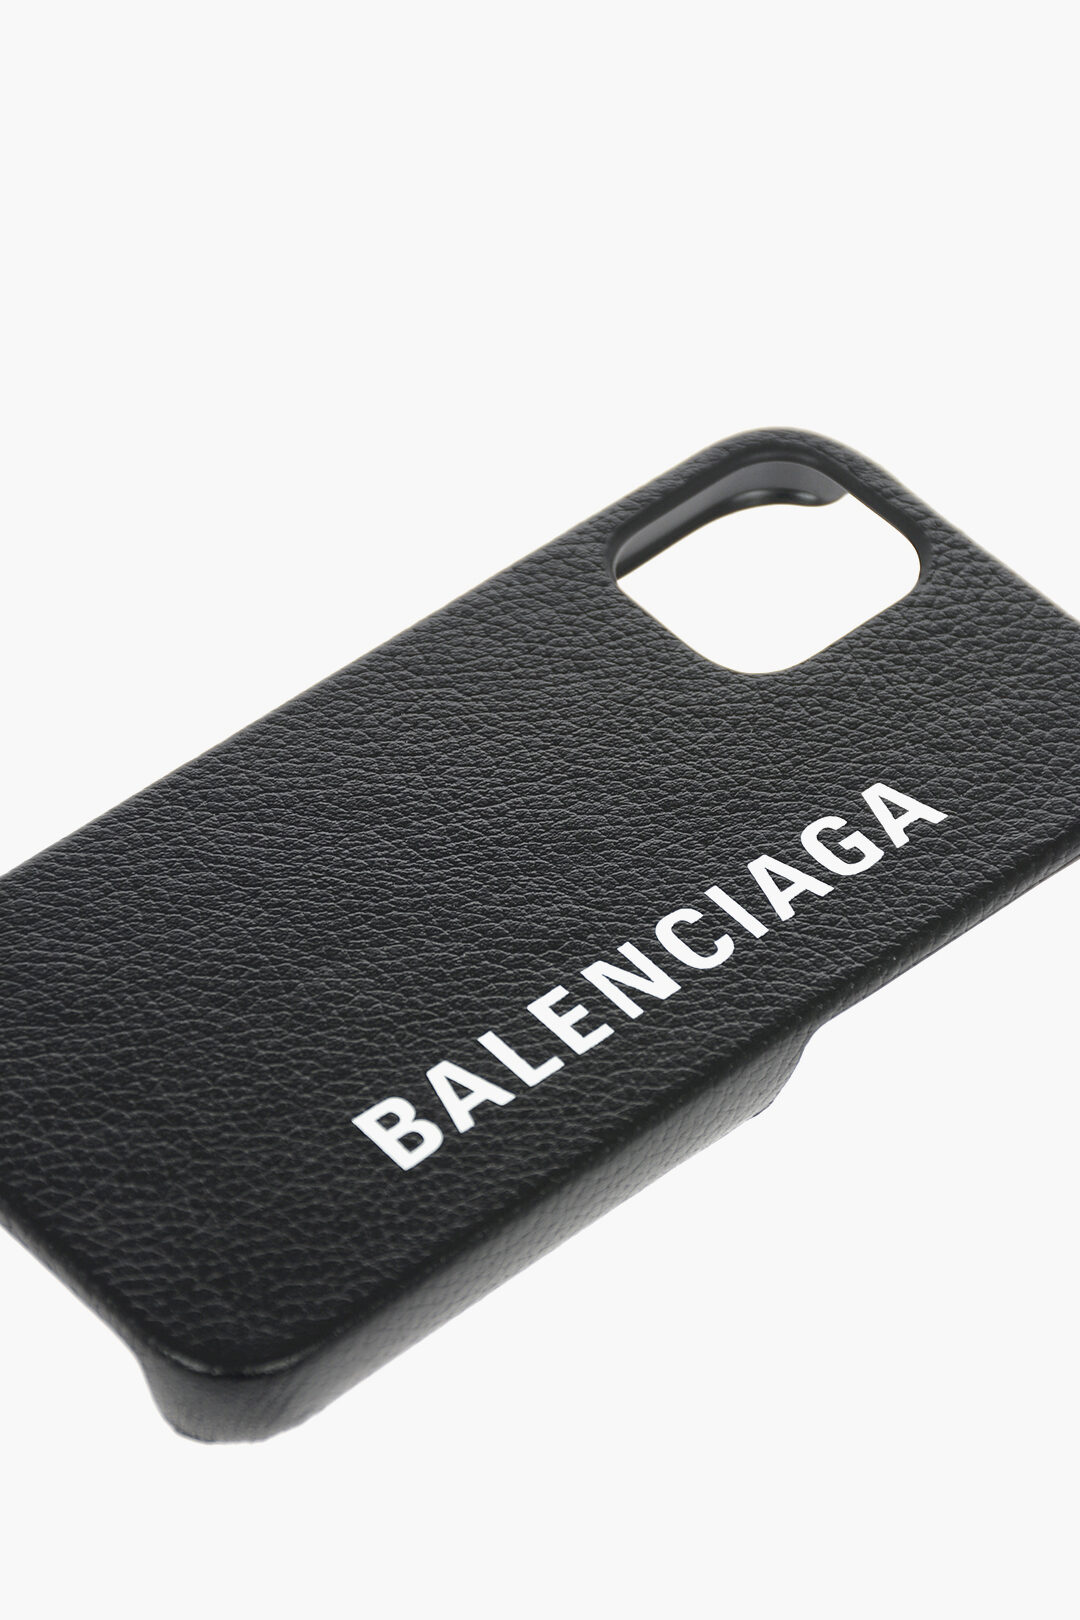 Balenciaga iPhone Cases for Sale  Fine Art America